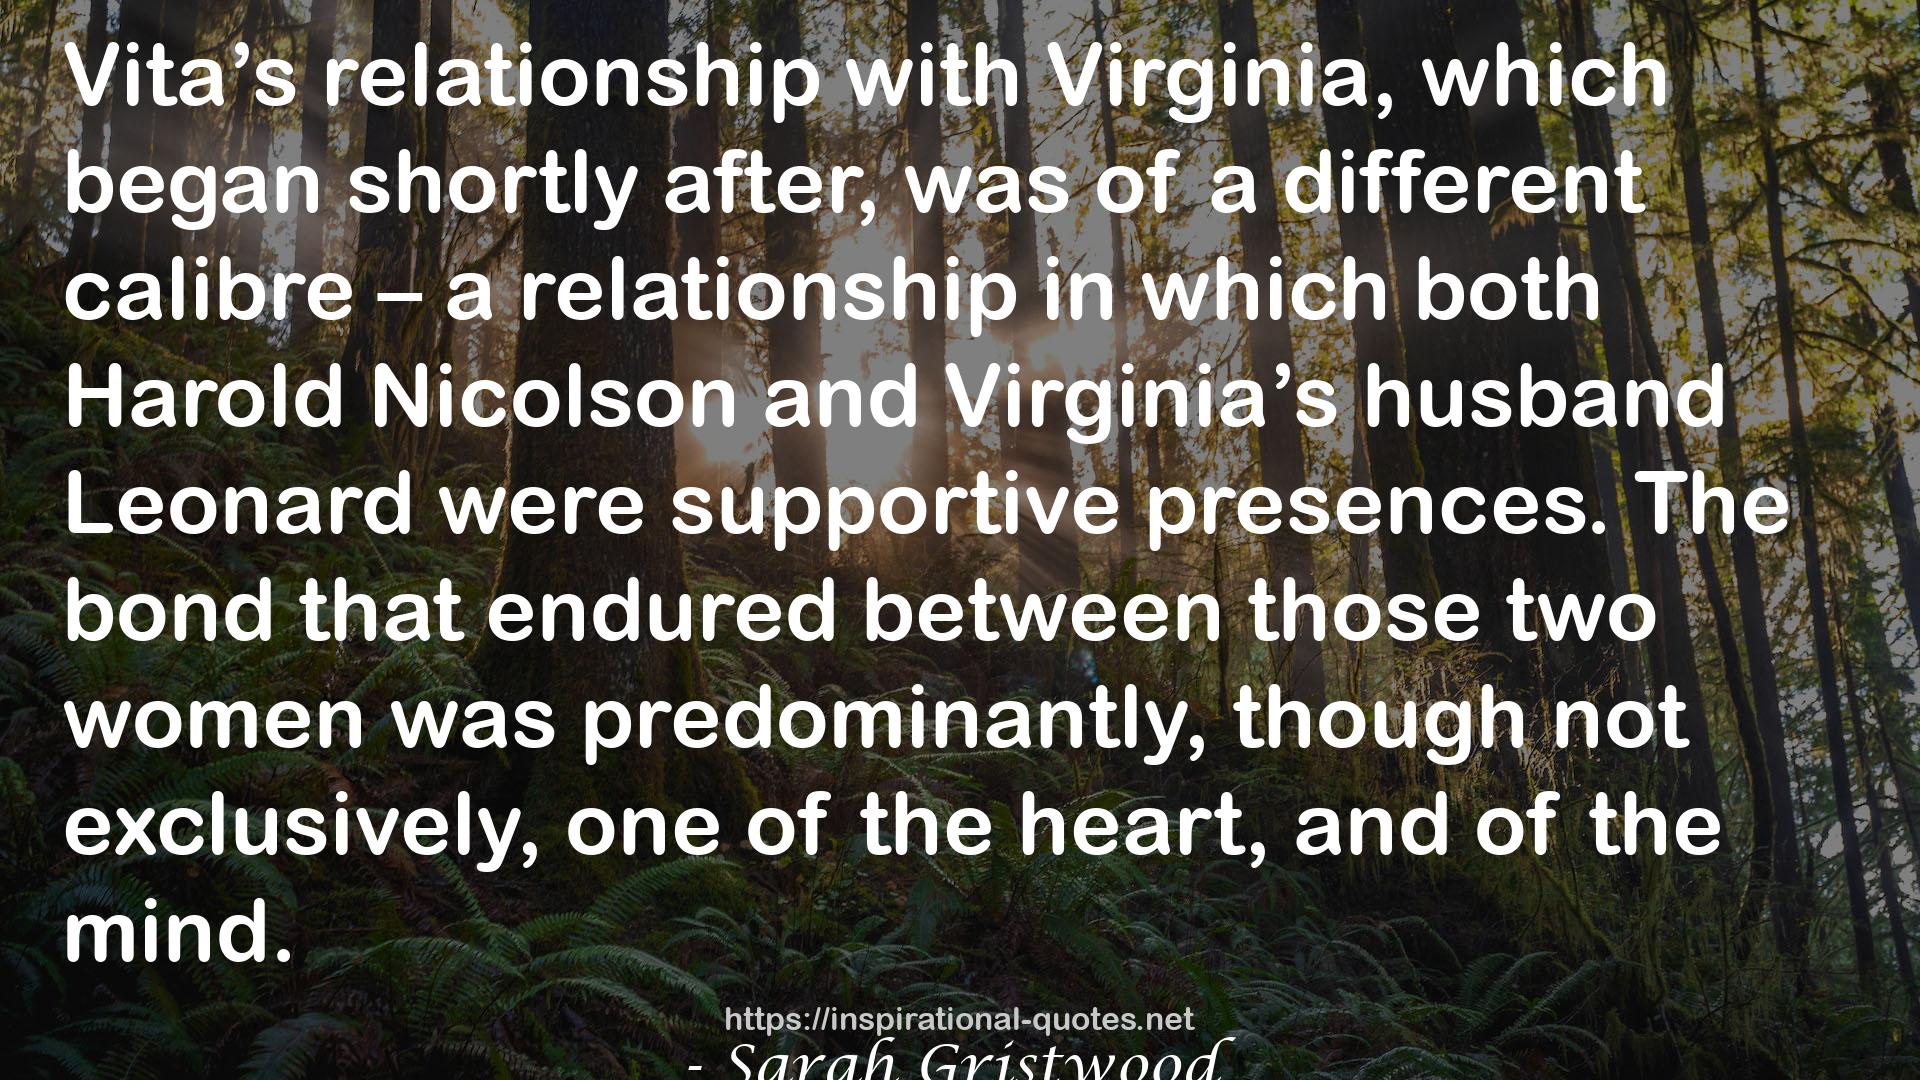 Vita & Virginia: A Double Life QUOTES